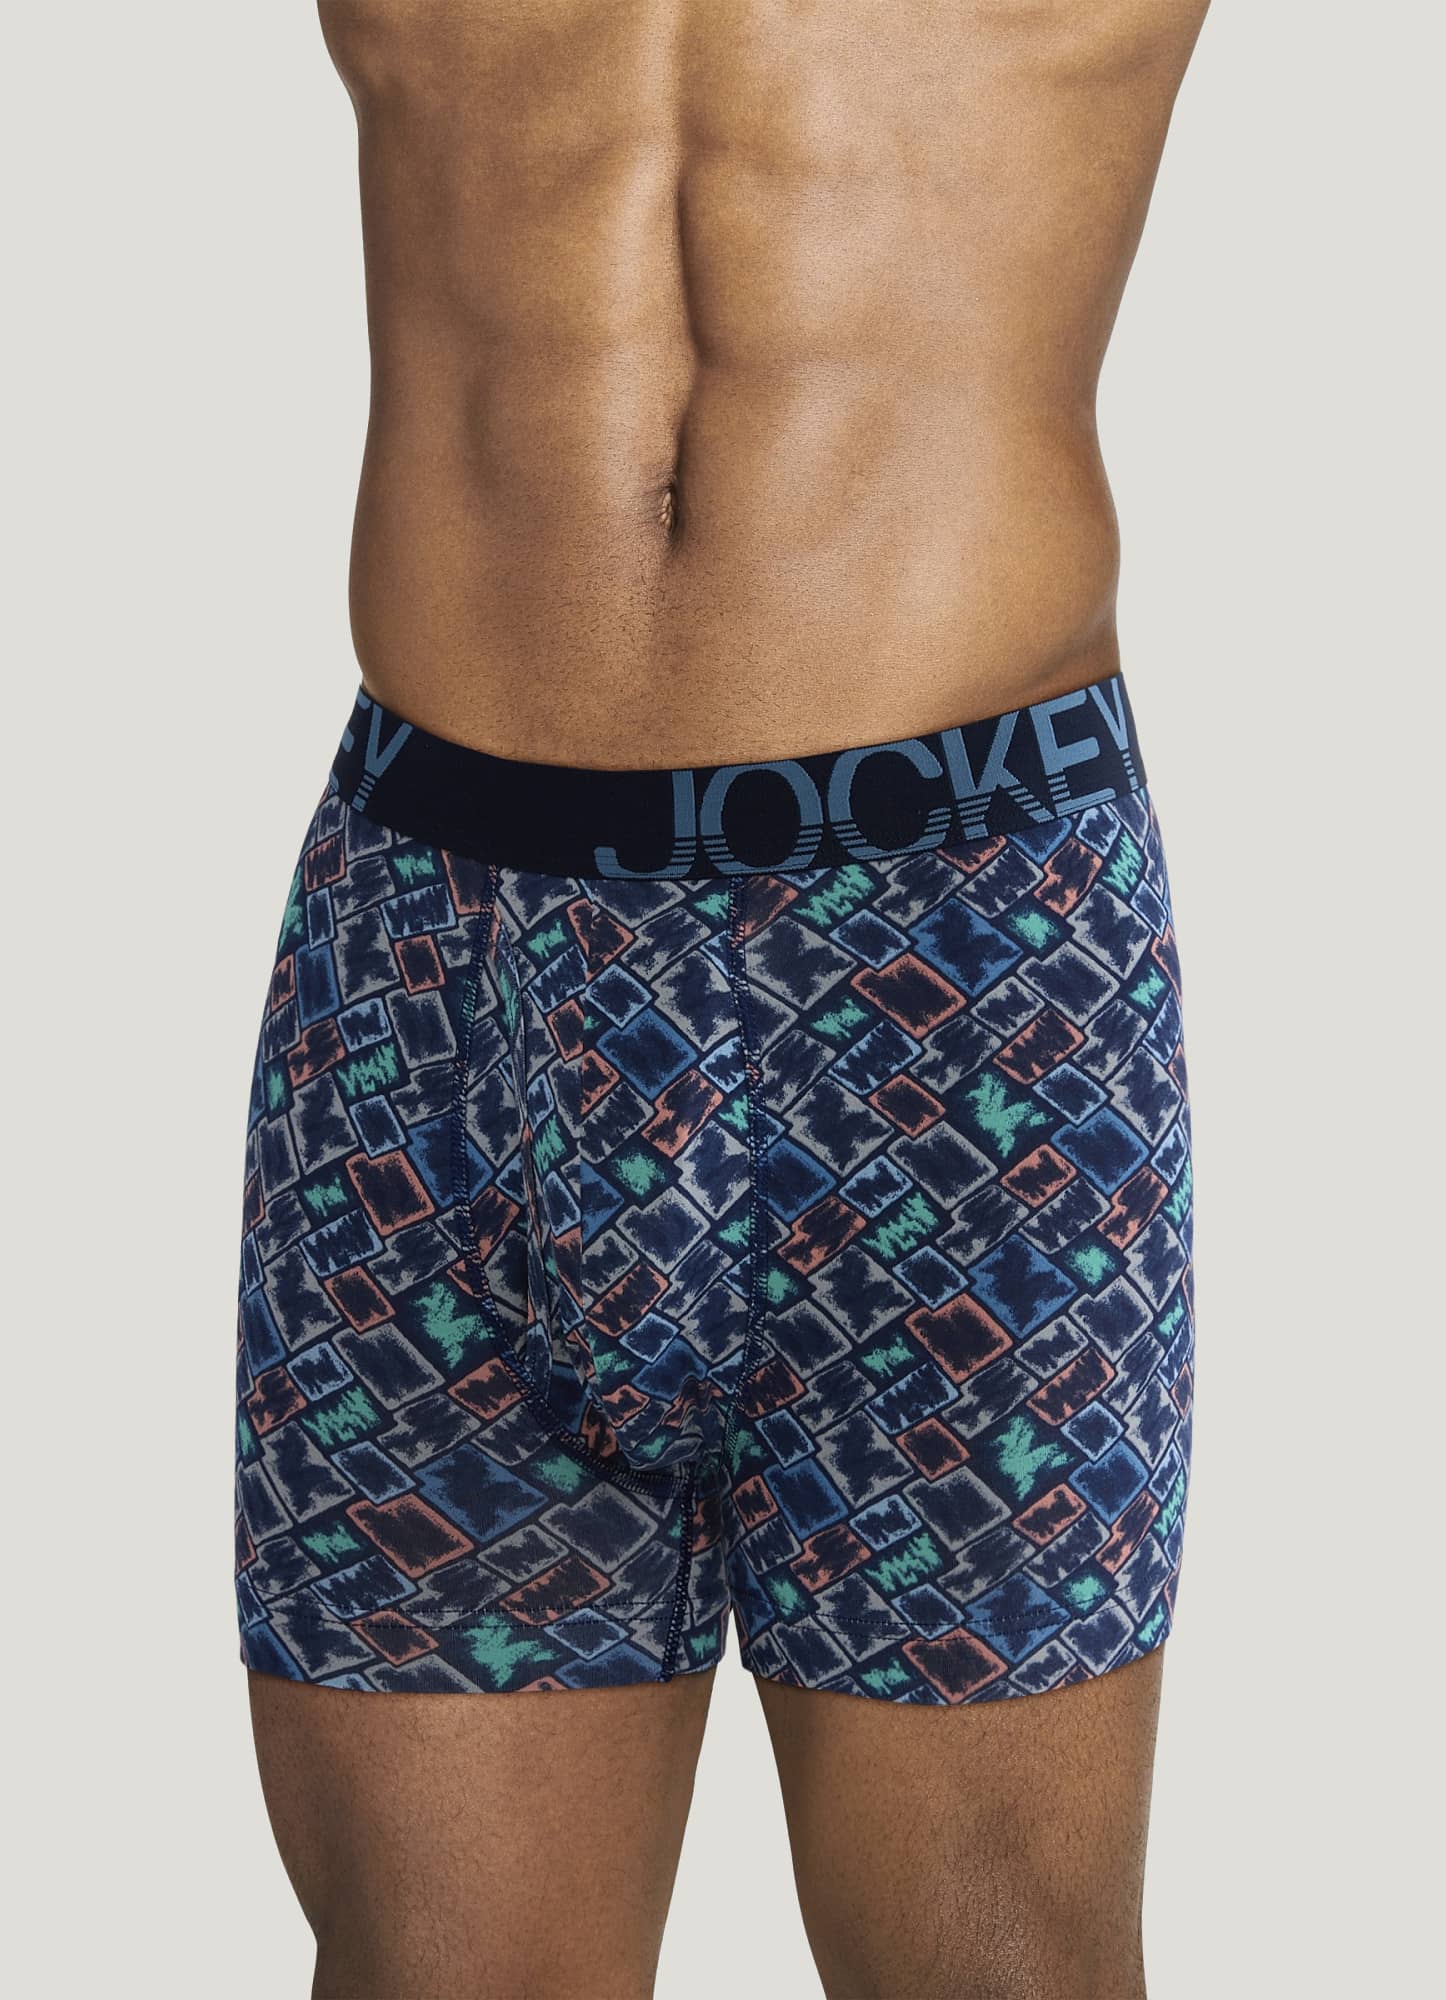 Jockey Low Rise Underwear - Buy Jockey Low Rise Underwear online